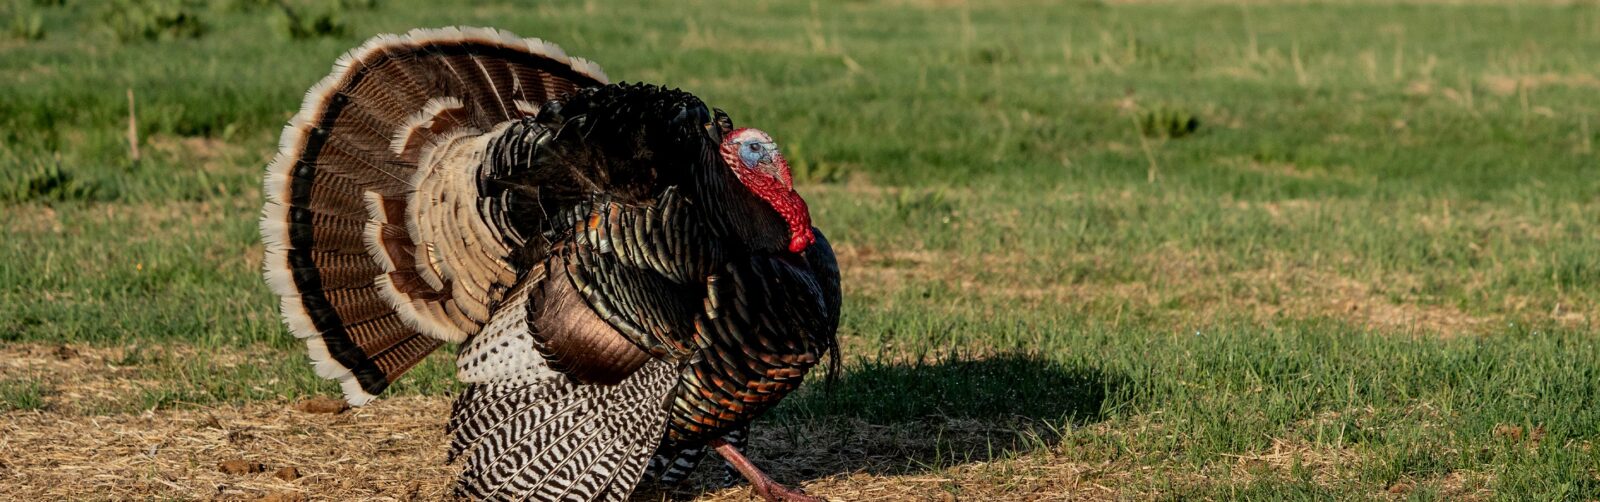 a large turkey in a field